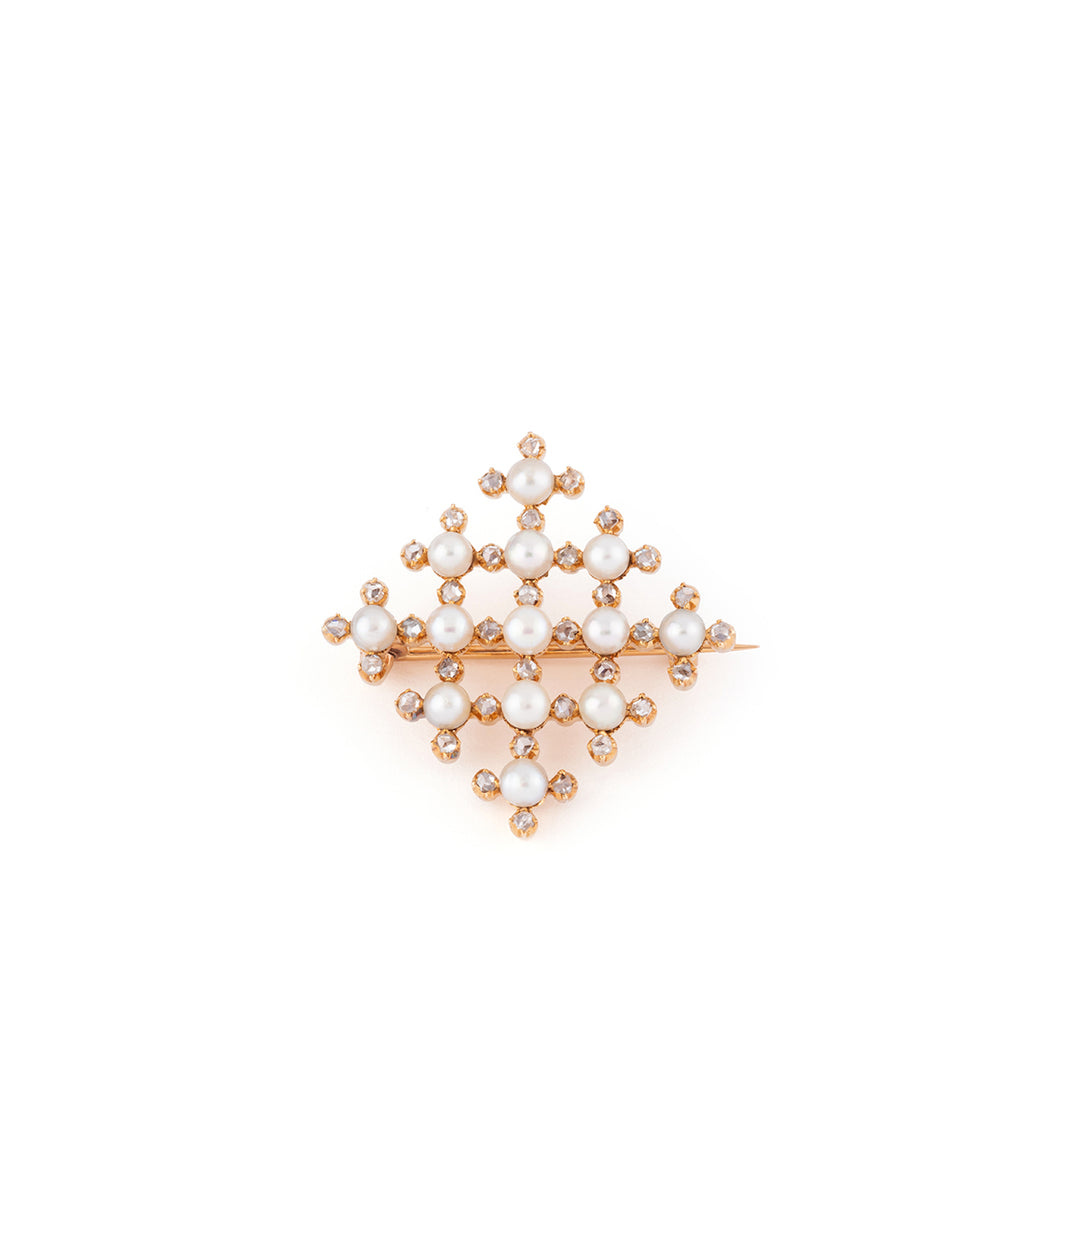 Ancienne broche en perles et diamants "Haro" - Caillou Paris